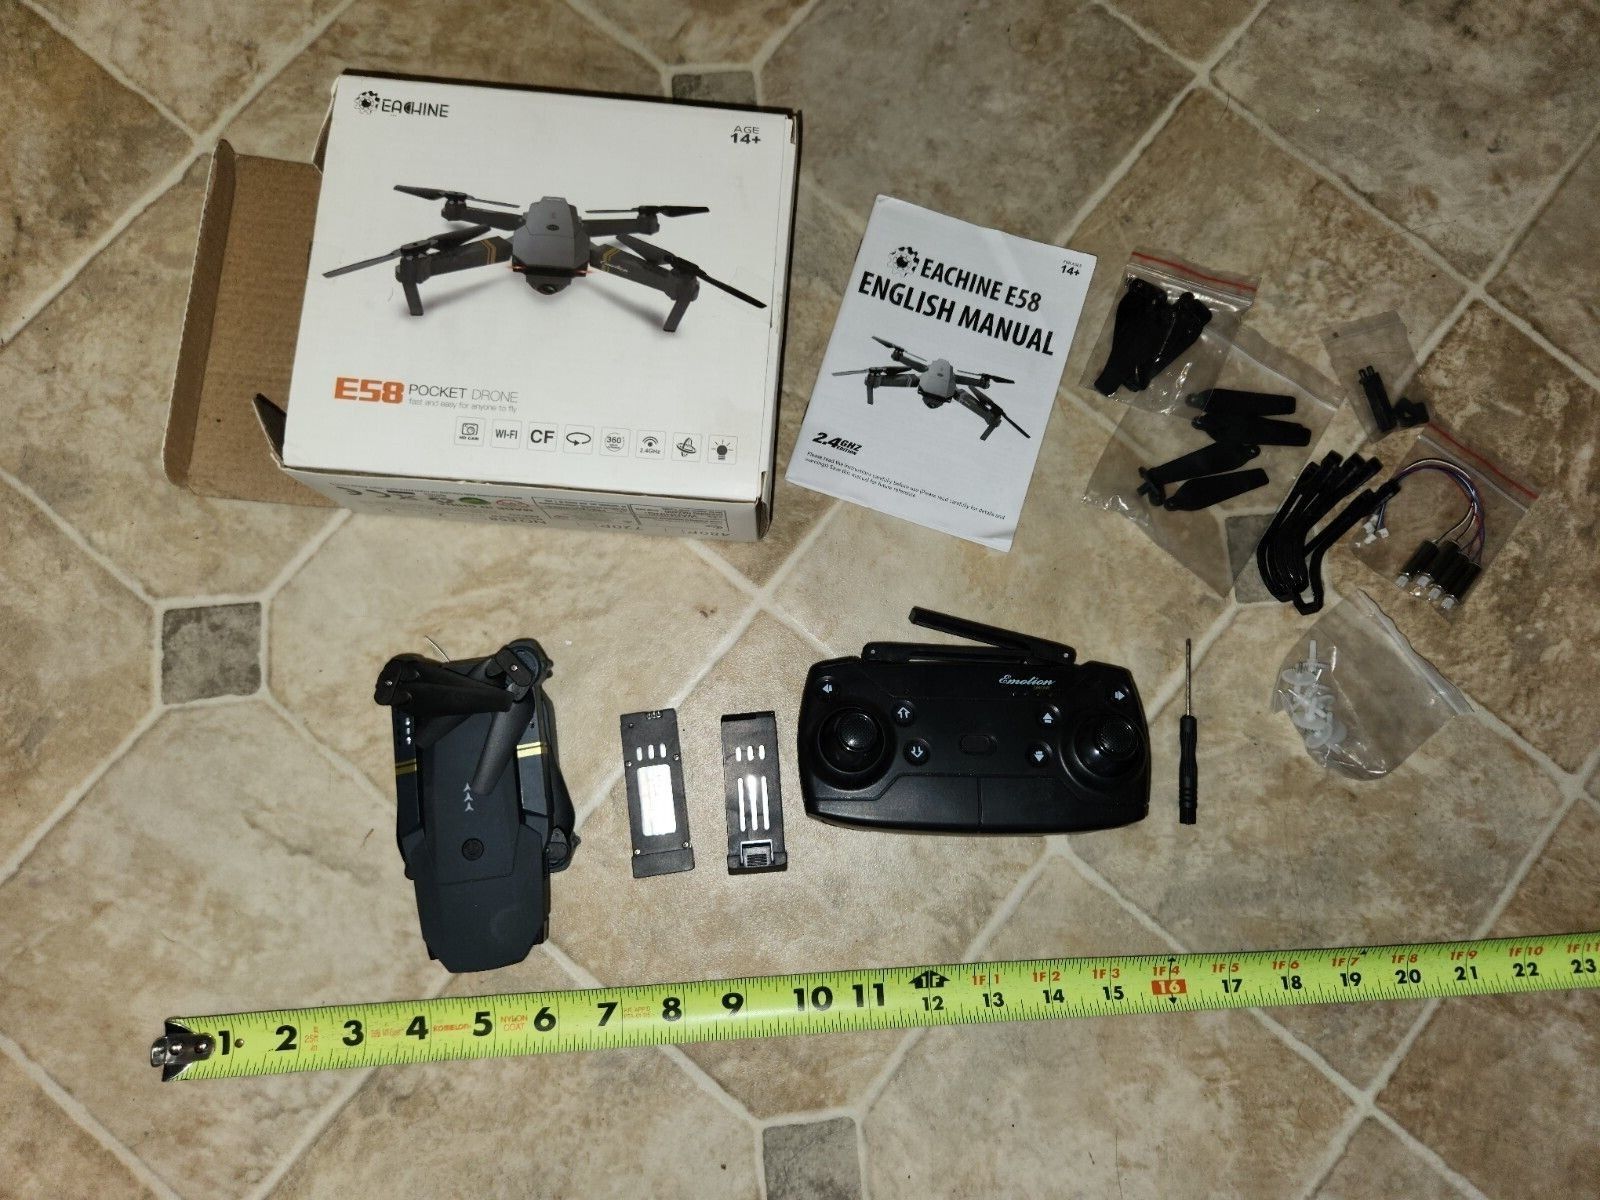 Portable Drone Kit w/ FPV Goggles & Camera